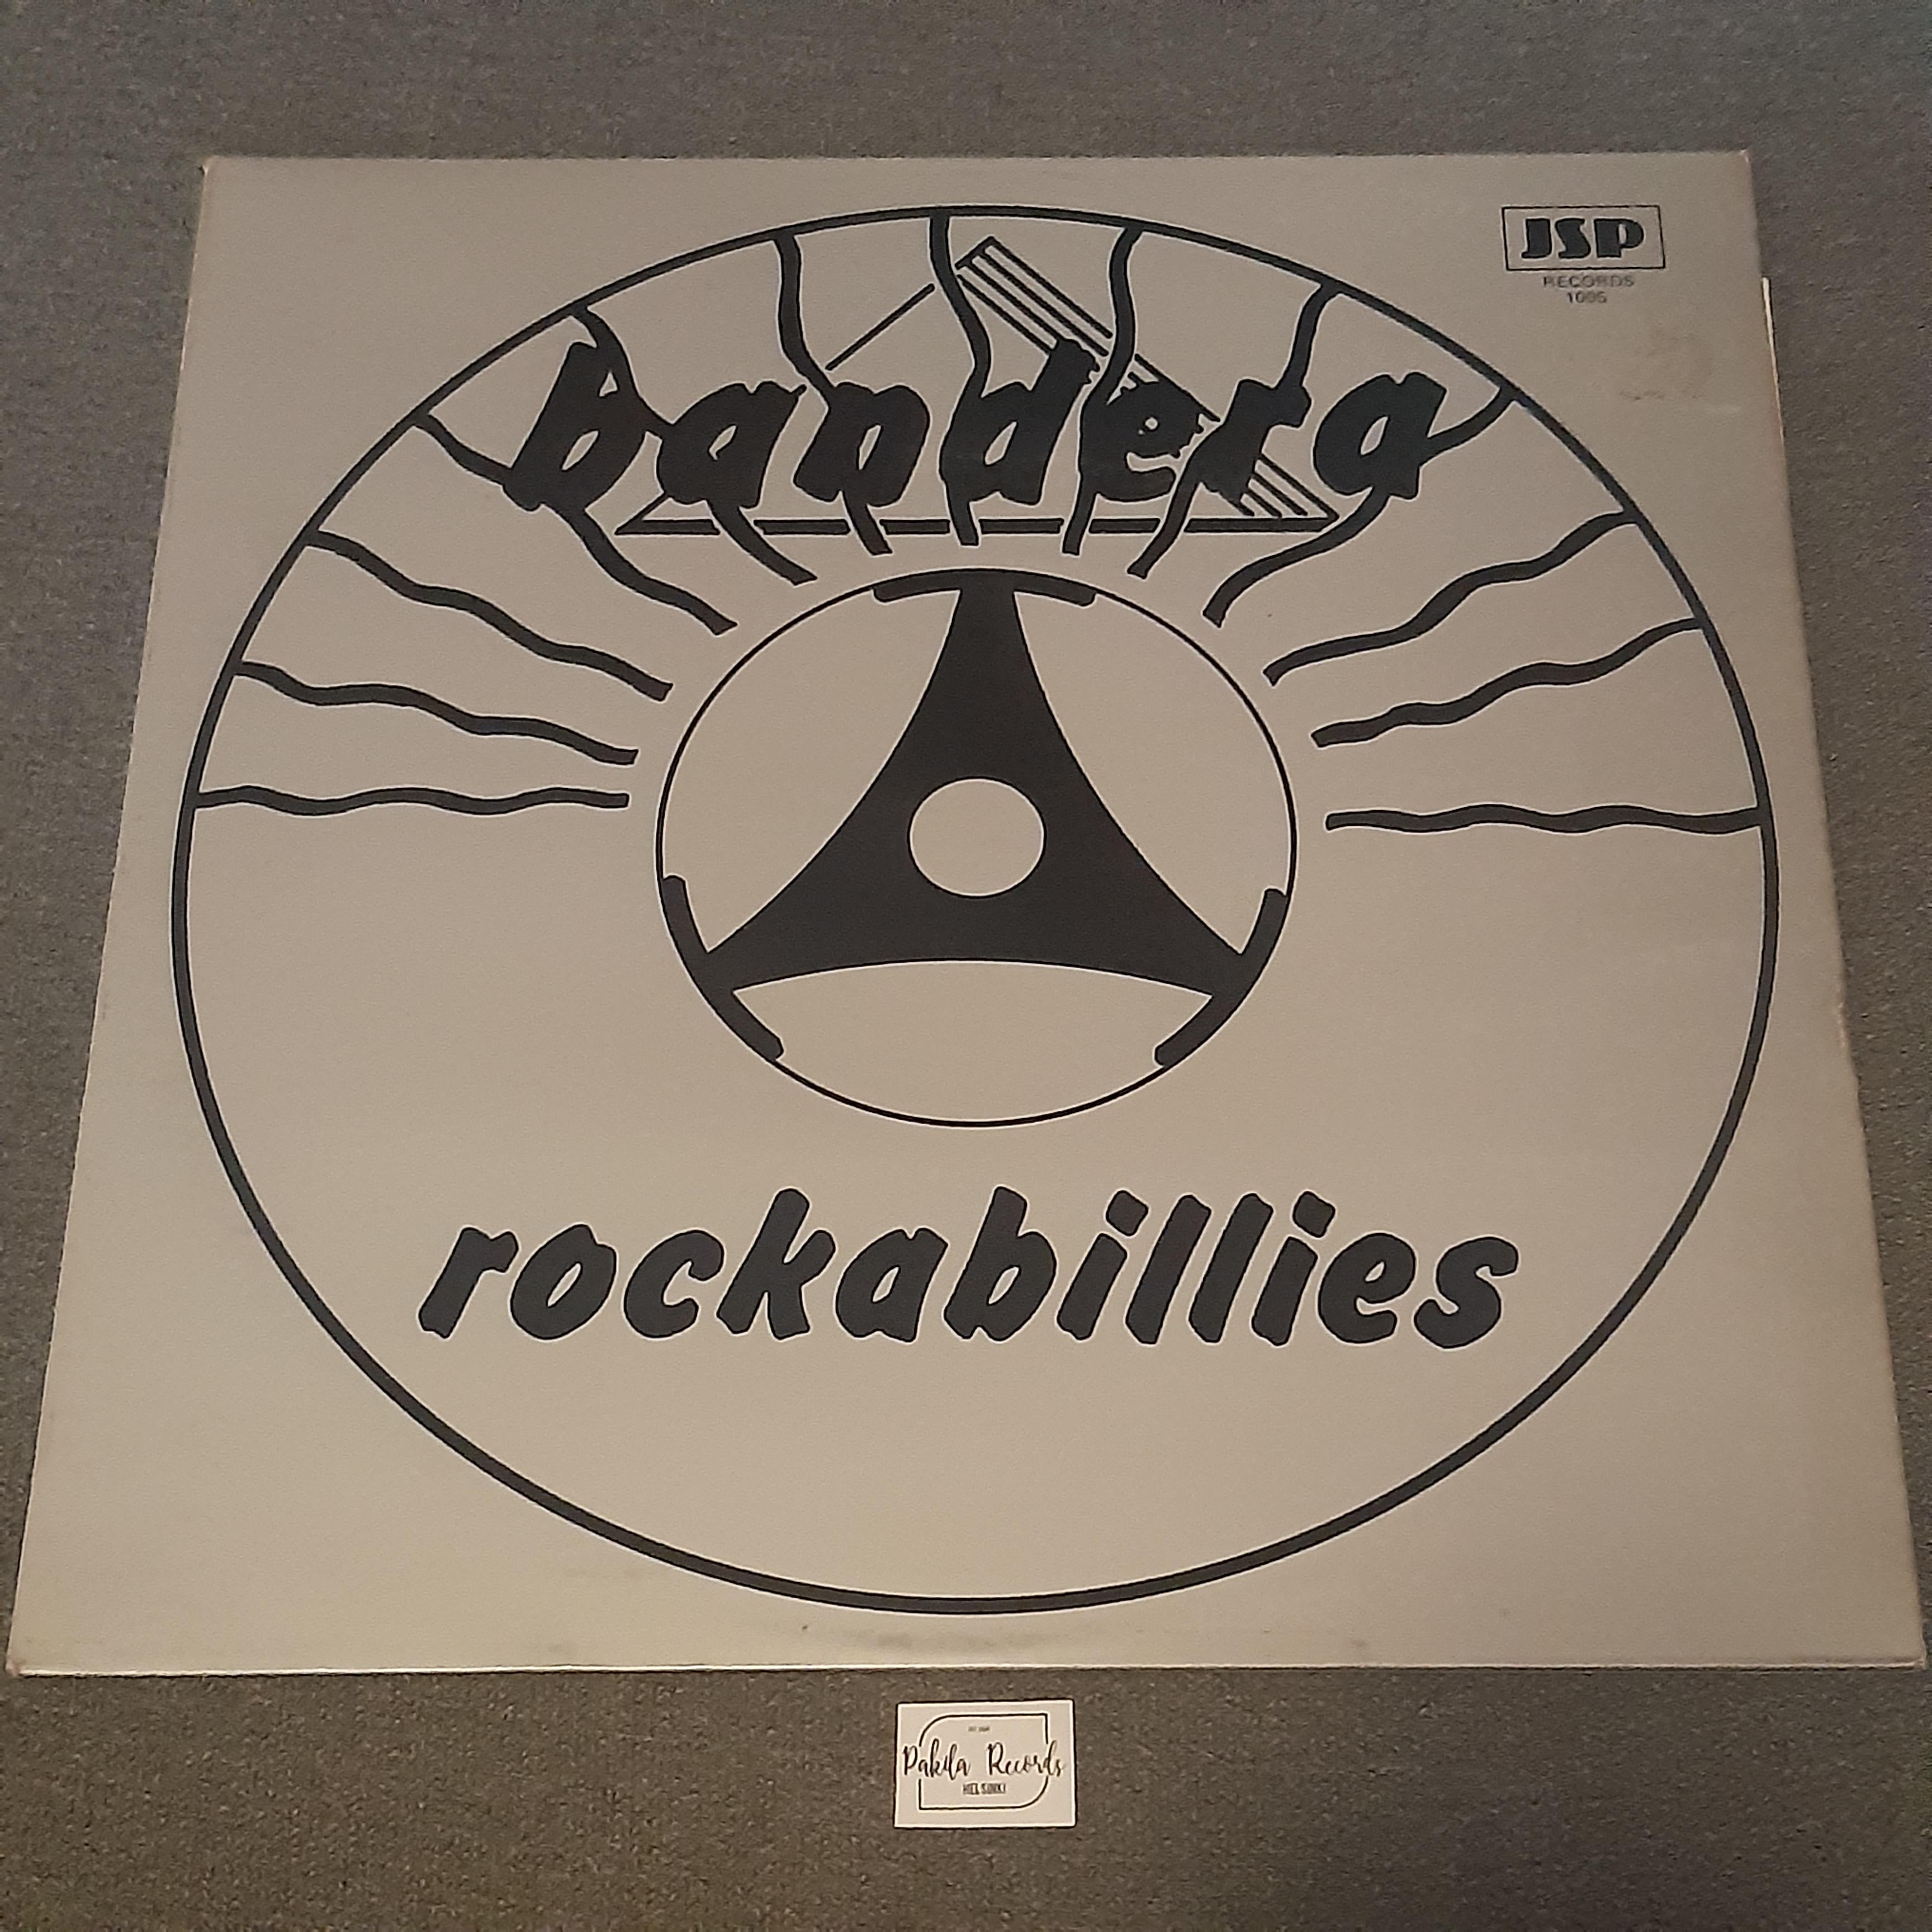 Bandera Rockabillies - LP (käytetty)